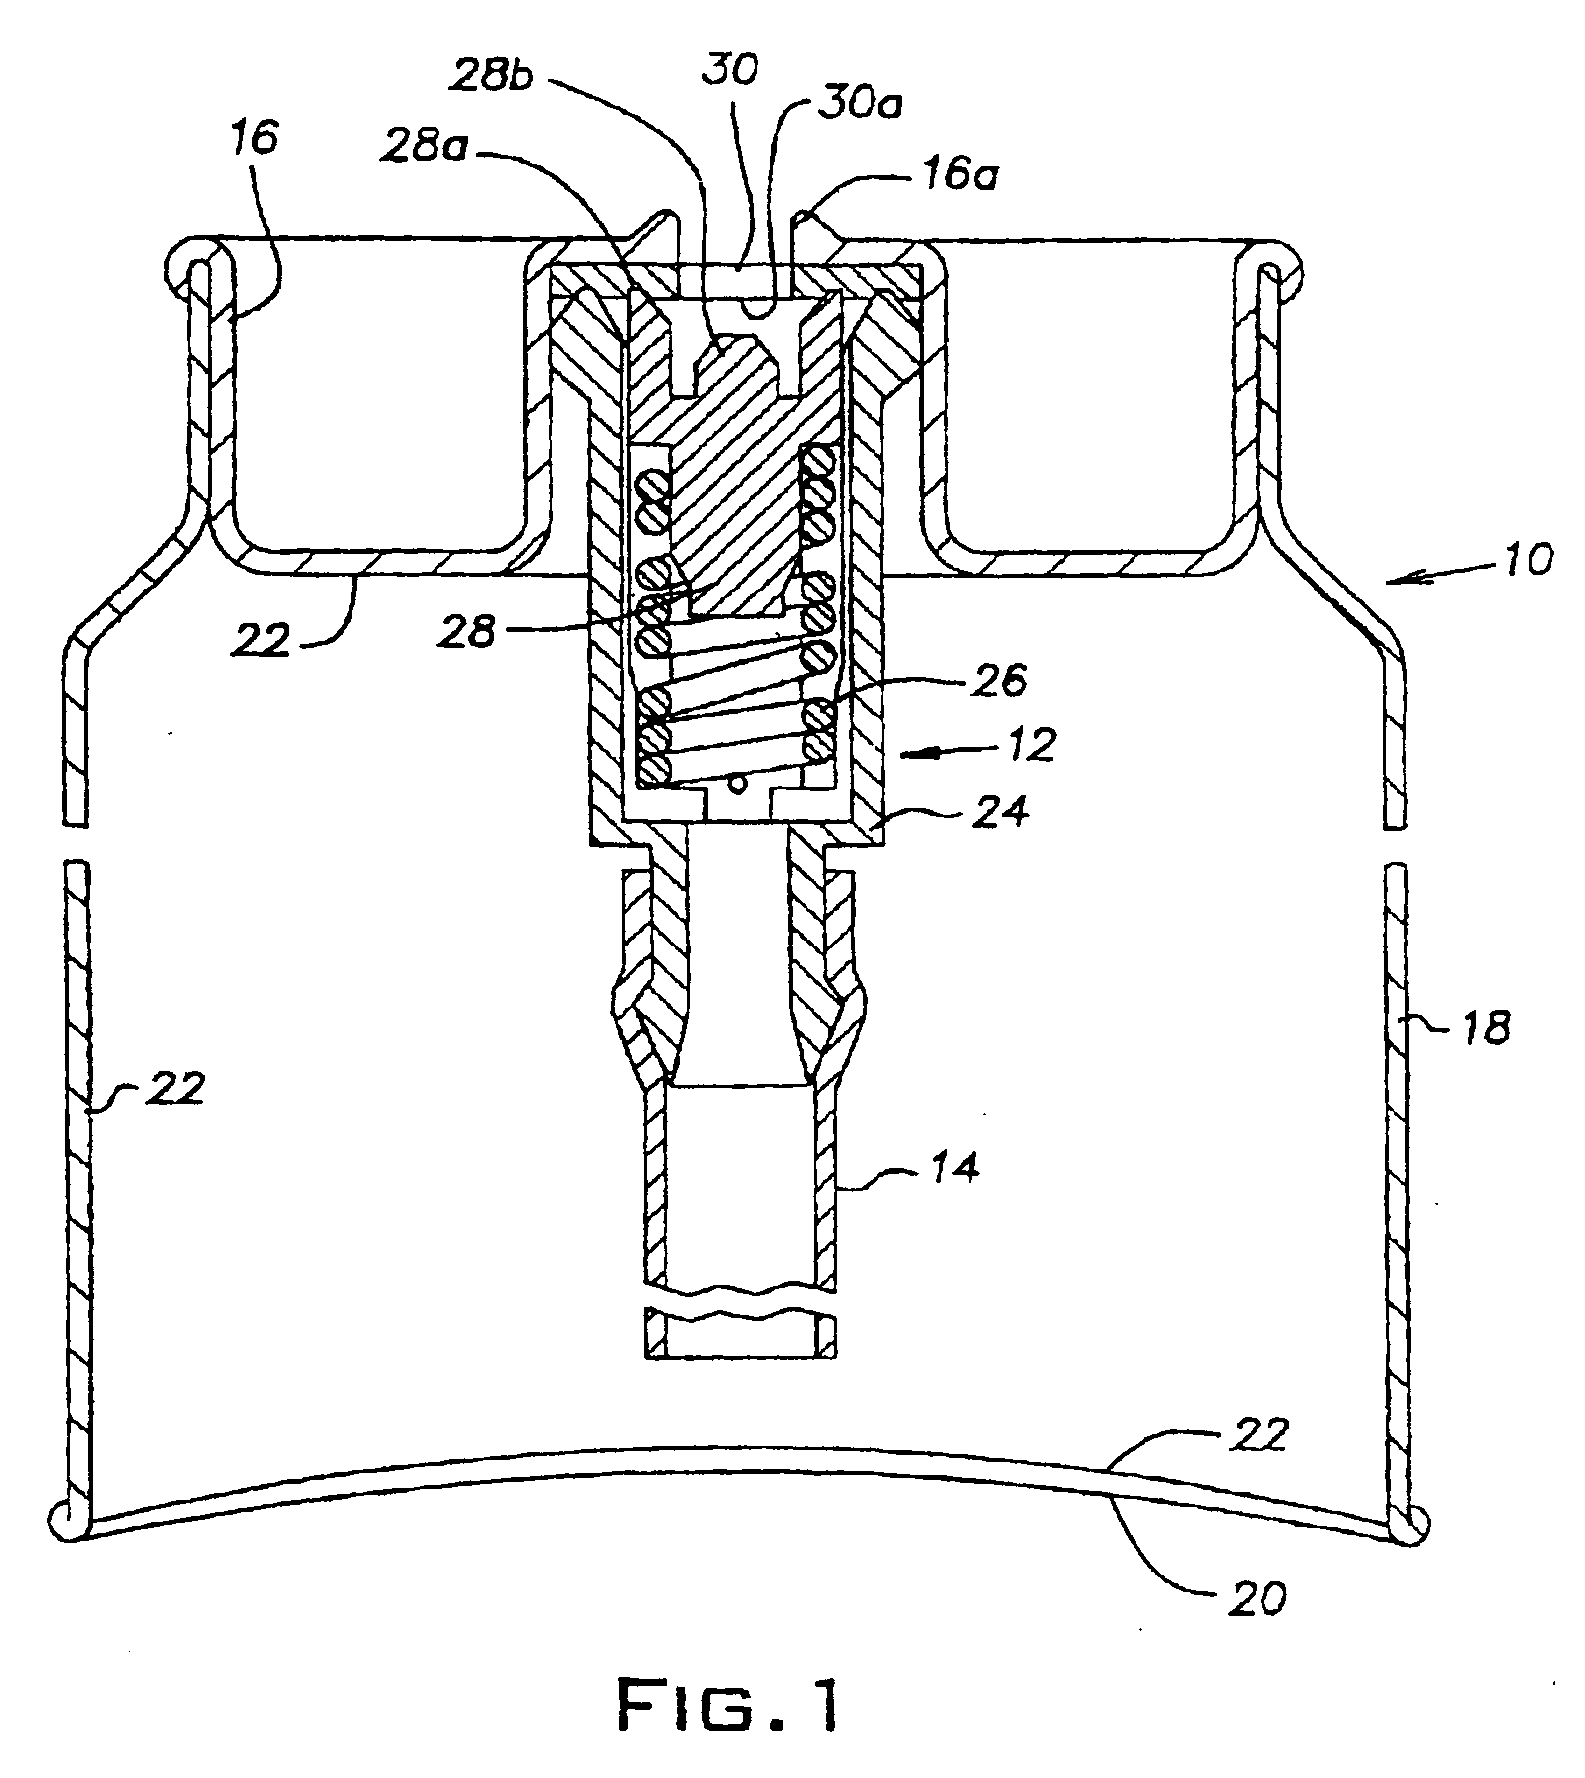 Apparatus and method for dispensing liquids